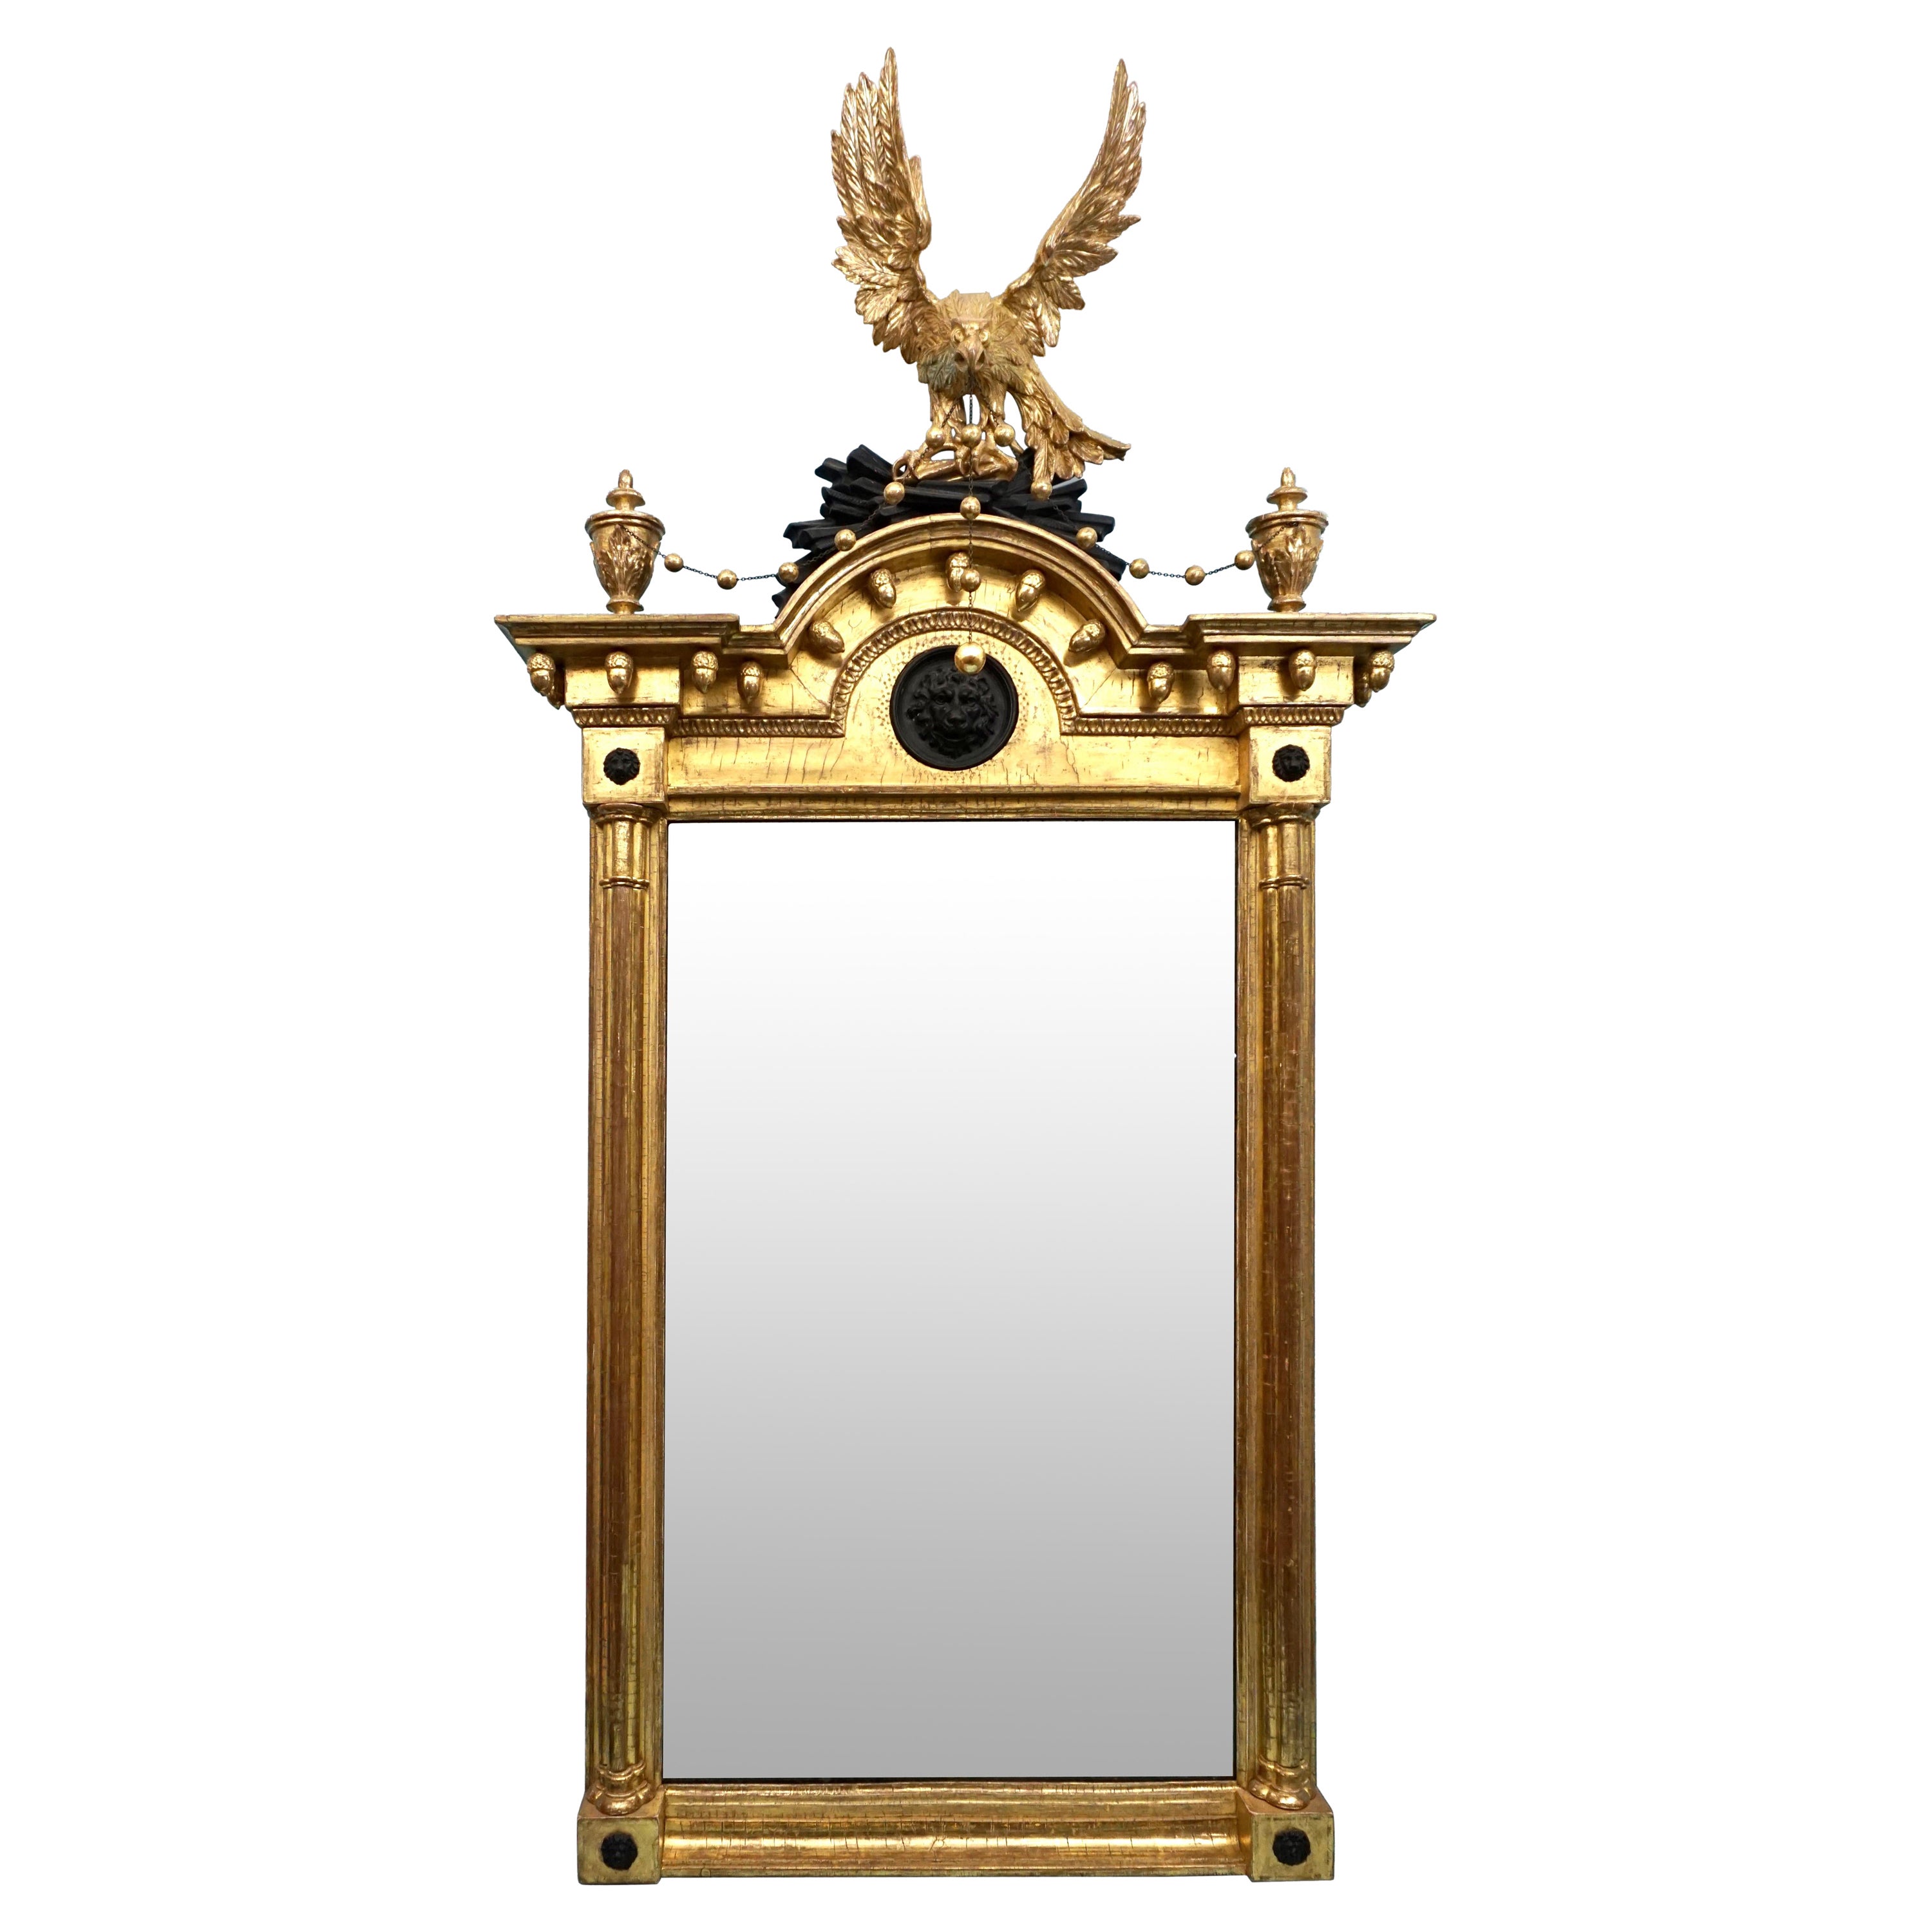 Miroir en bois doré de style Régence avec crémaillère d'aigle sculptée et masque de lion